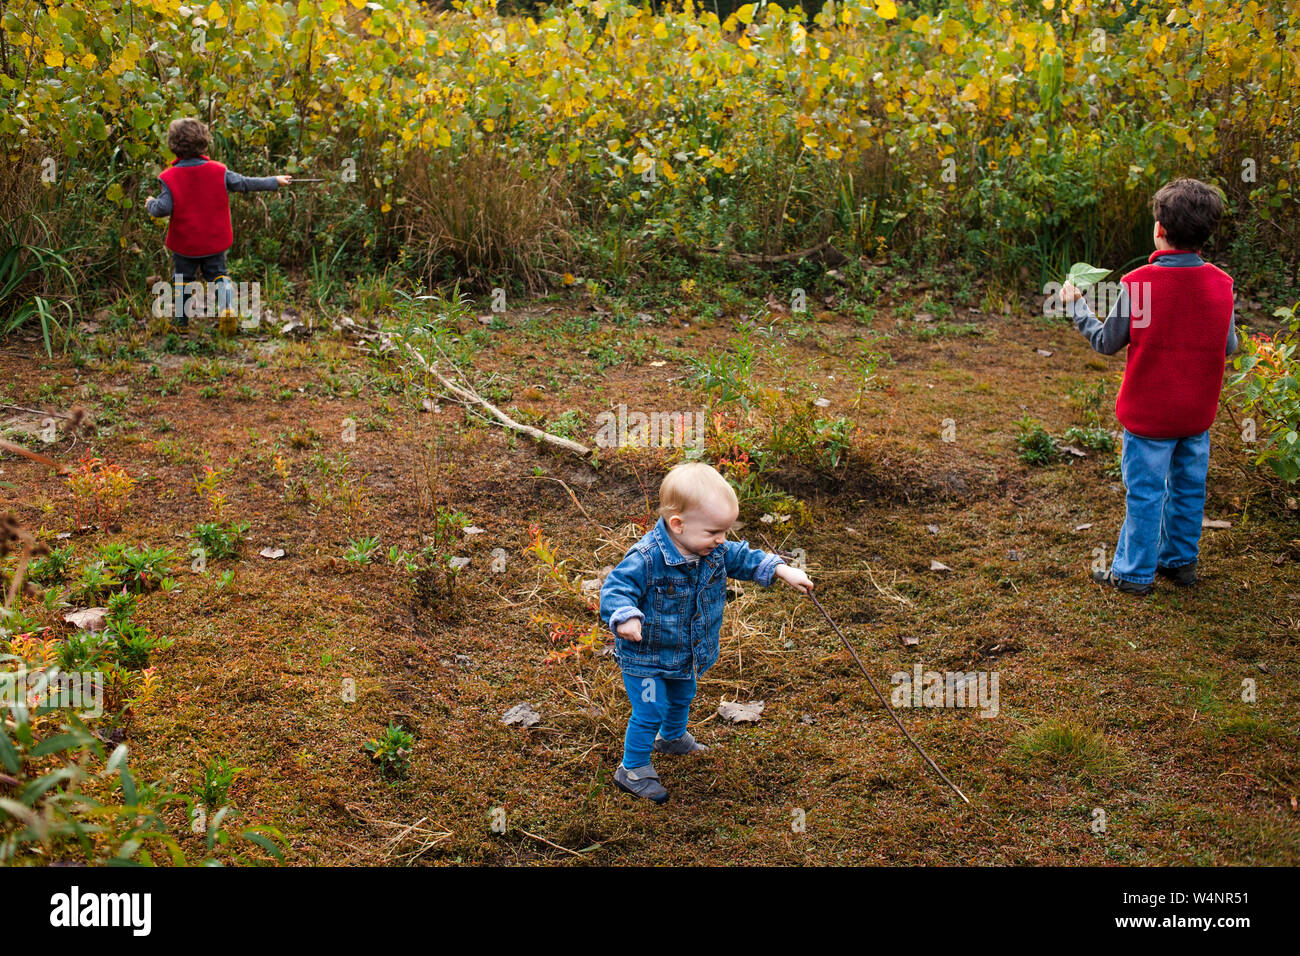 Drei kleine Kinder spielen zusammen in einer goldenen Feld Stockfoto